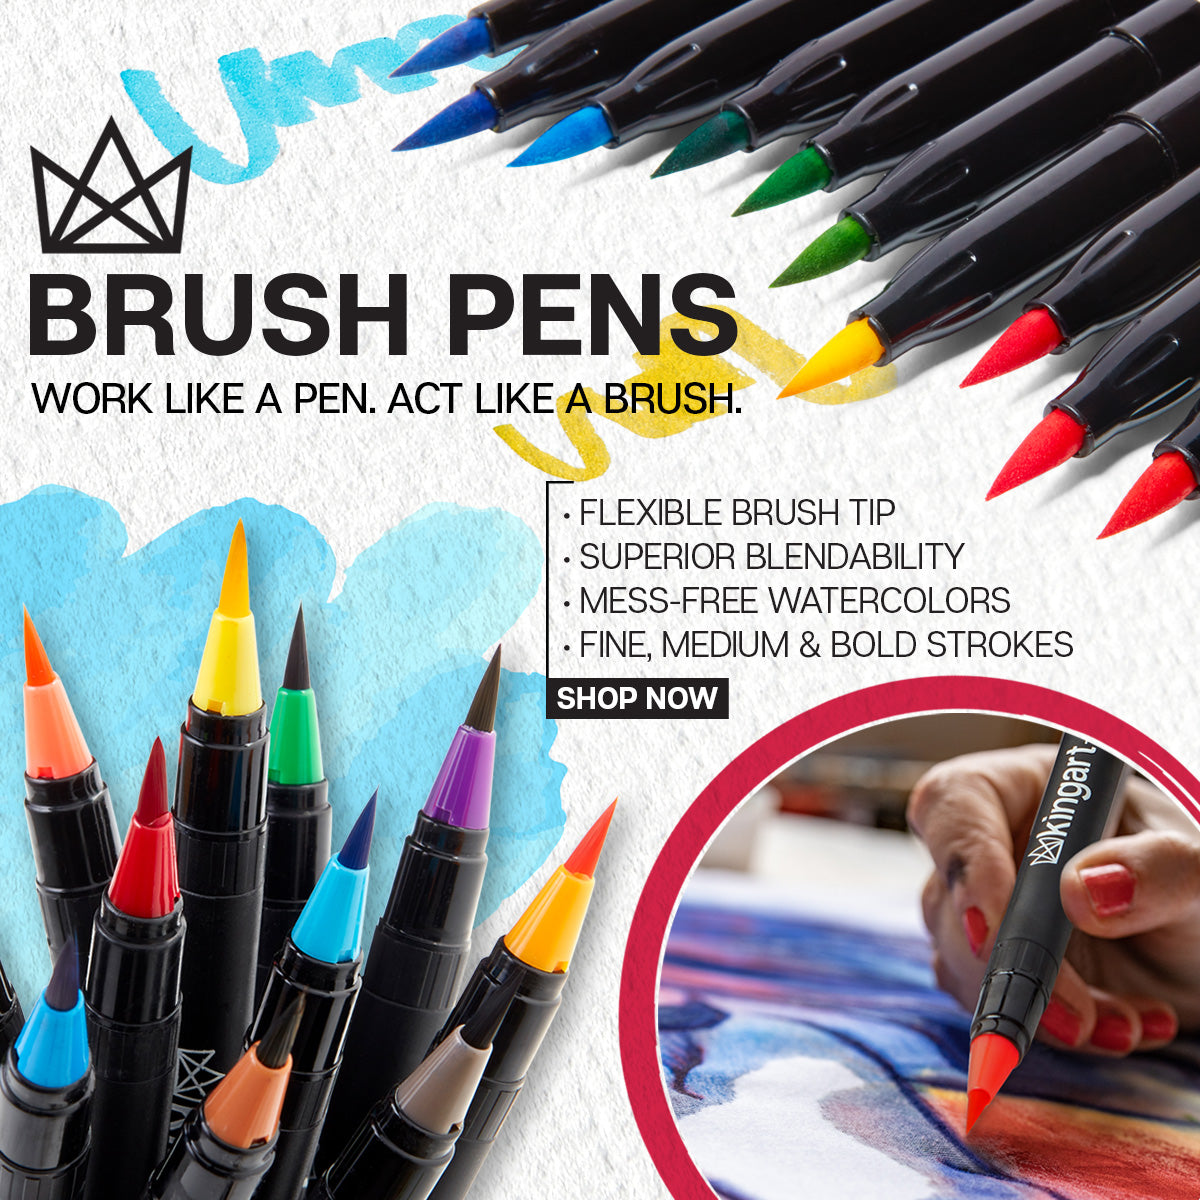 Ignart 30 Watercolor Brush Pen Set